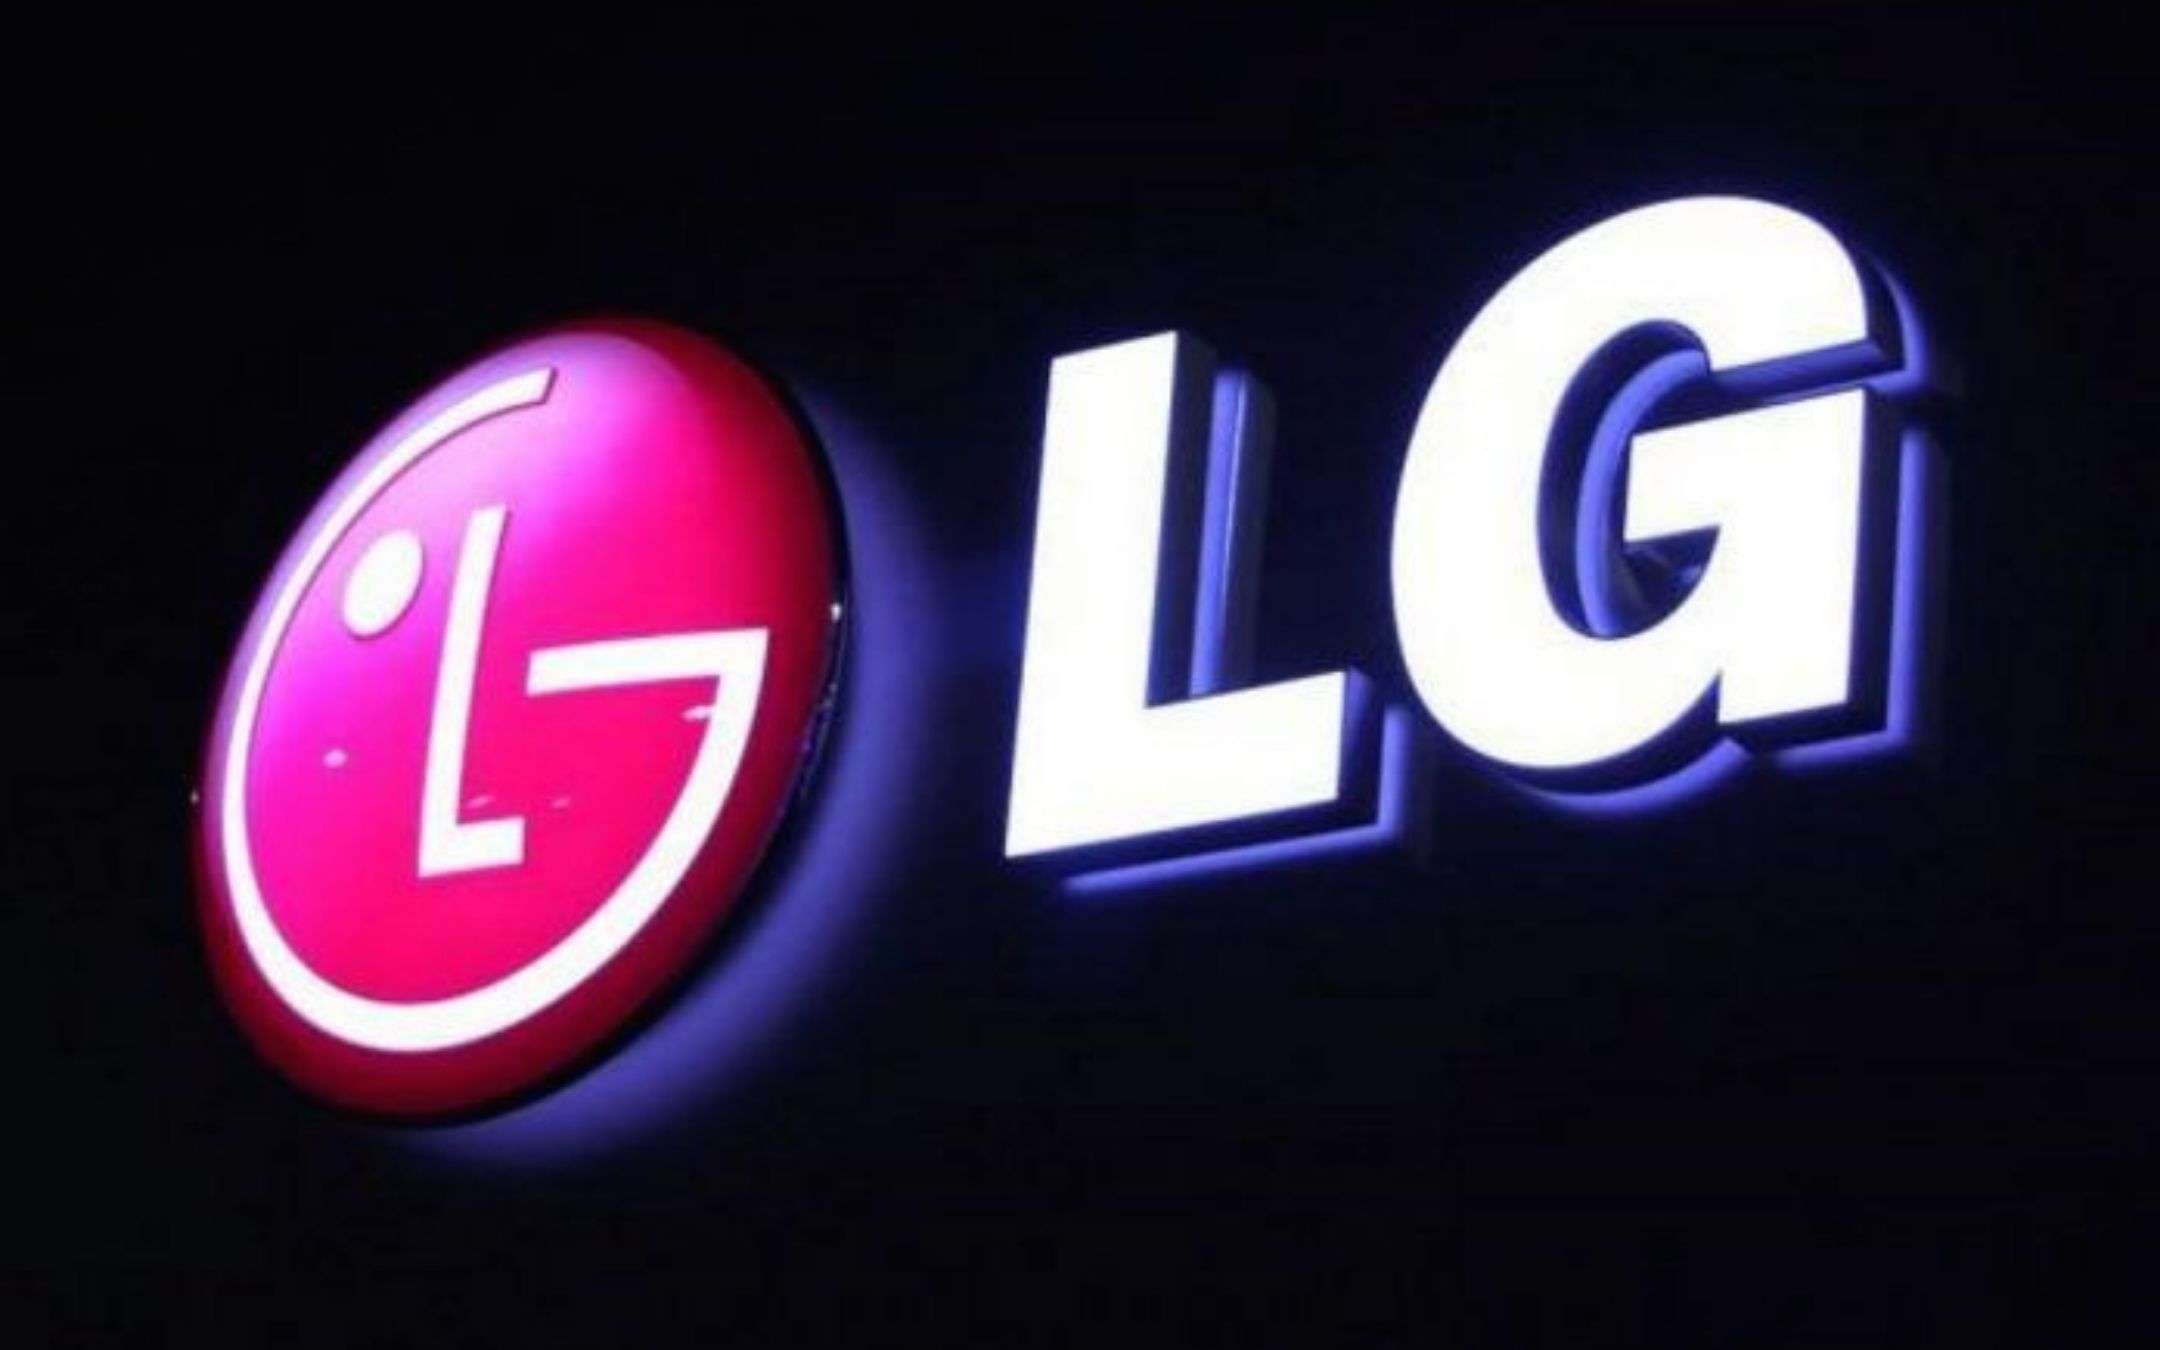 LG venderà iPhone nei suoi store in Corea del Sud